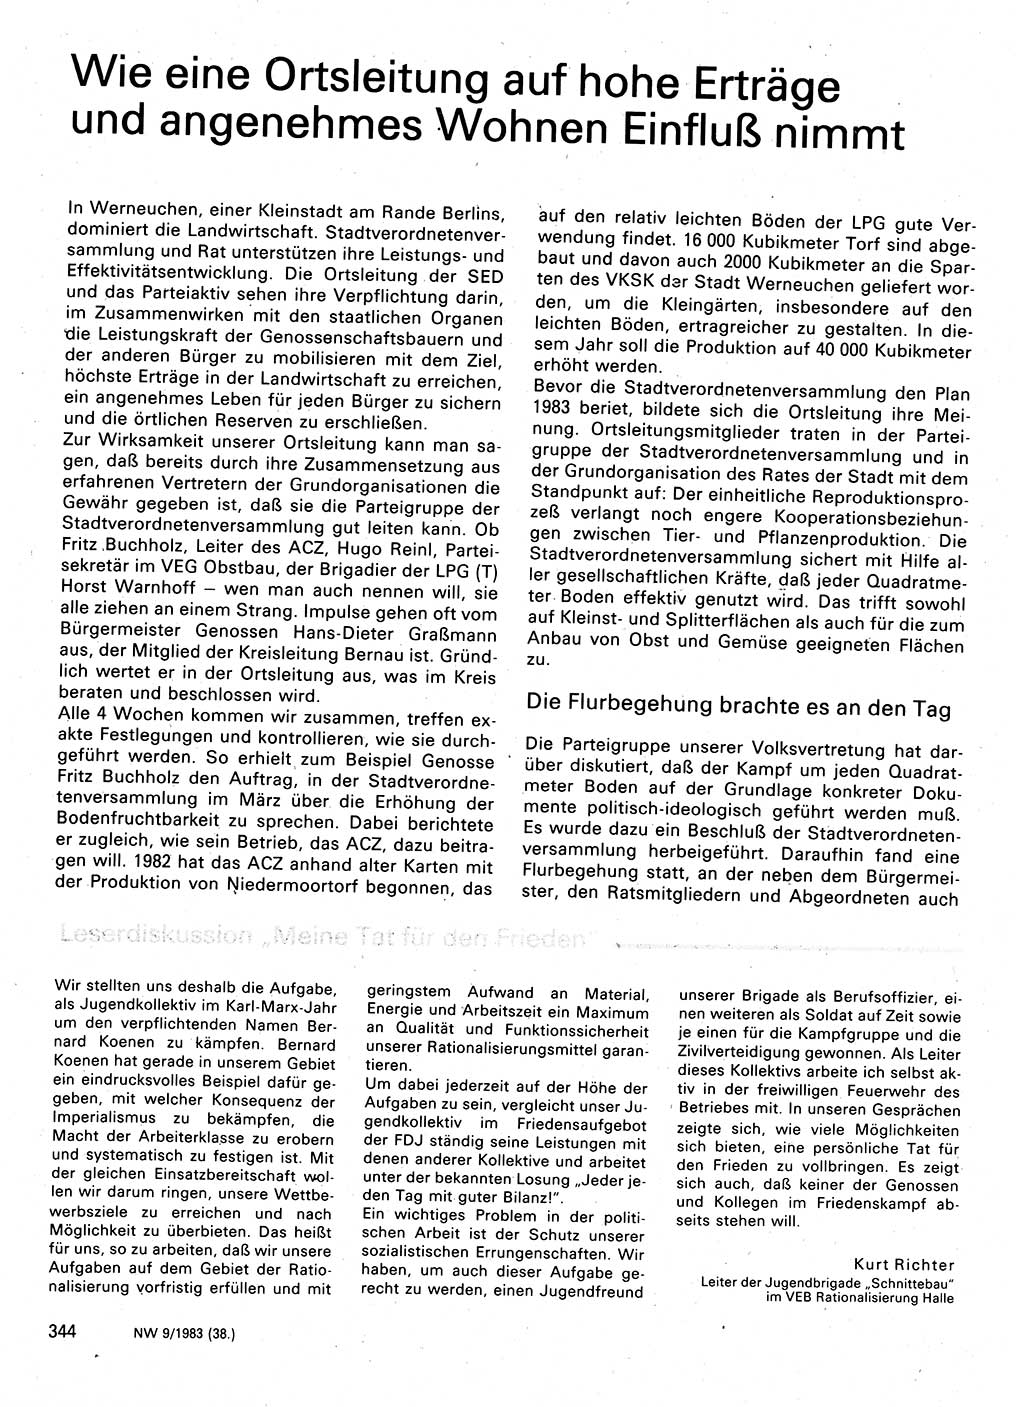 Neuer Weg (NW), Organ des Zentralkomitees (ZK) der SED (Sozialistische Einheitspartei Deutschlands) für Fragen des Parteilebens, 38. Jahrgang [Deutsche Demokratische Republik (DDR)] 1983, Seite 344 (NW ZK SED DDR 1983, S. 344)